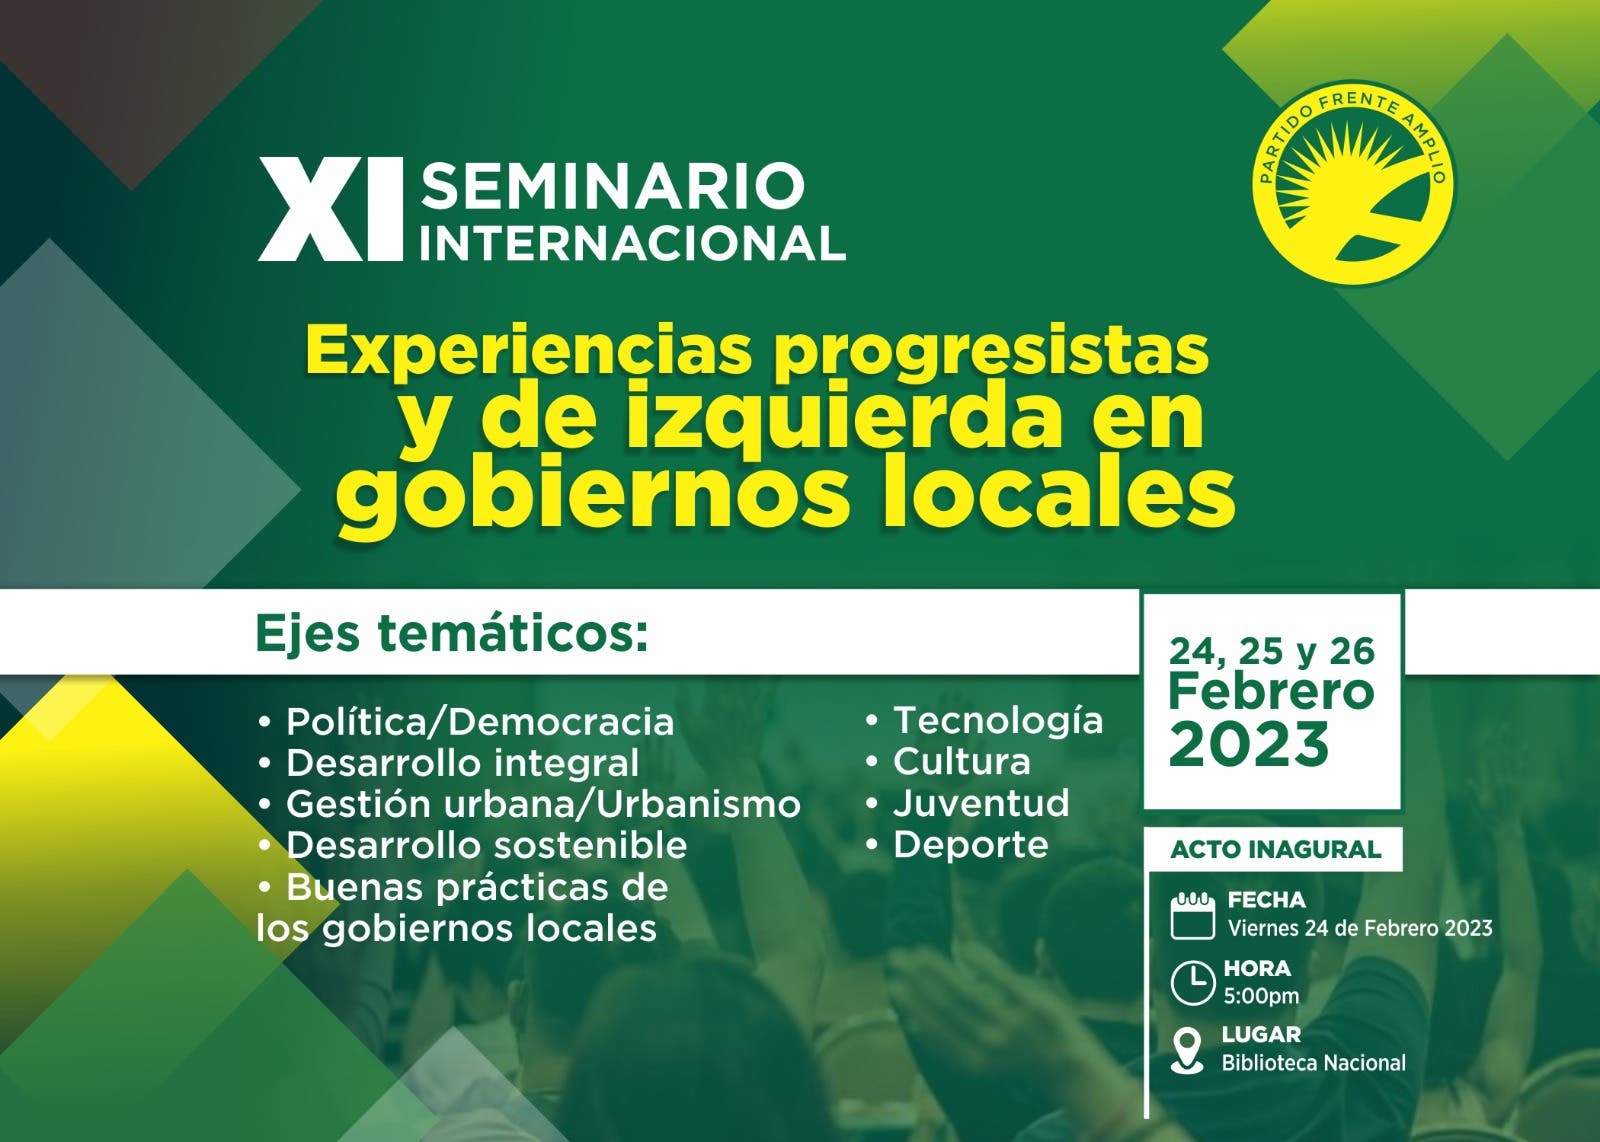 Frente Amplio celebrará seminario internacional sobre experiencia de gobiernos locales progresistas